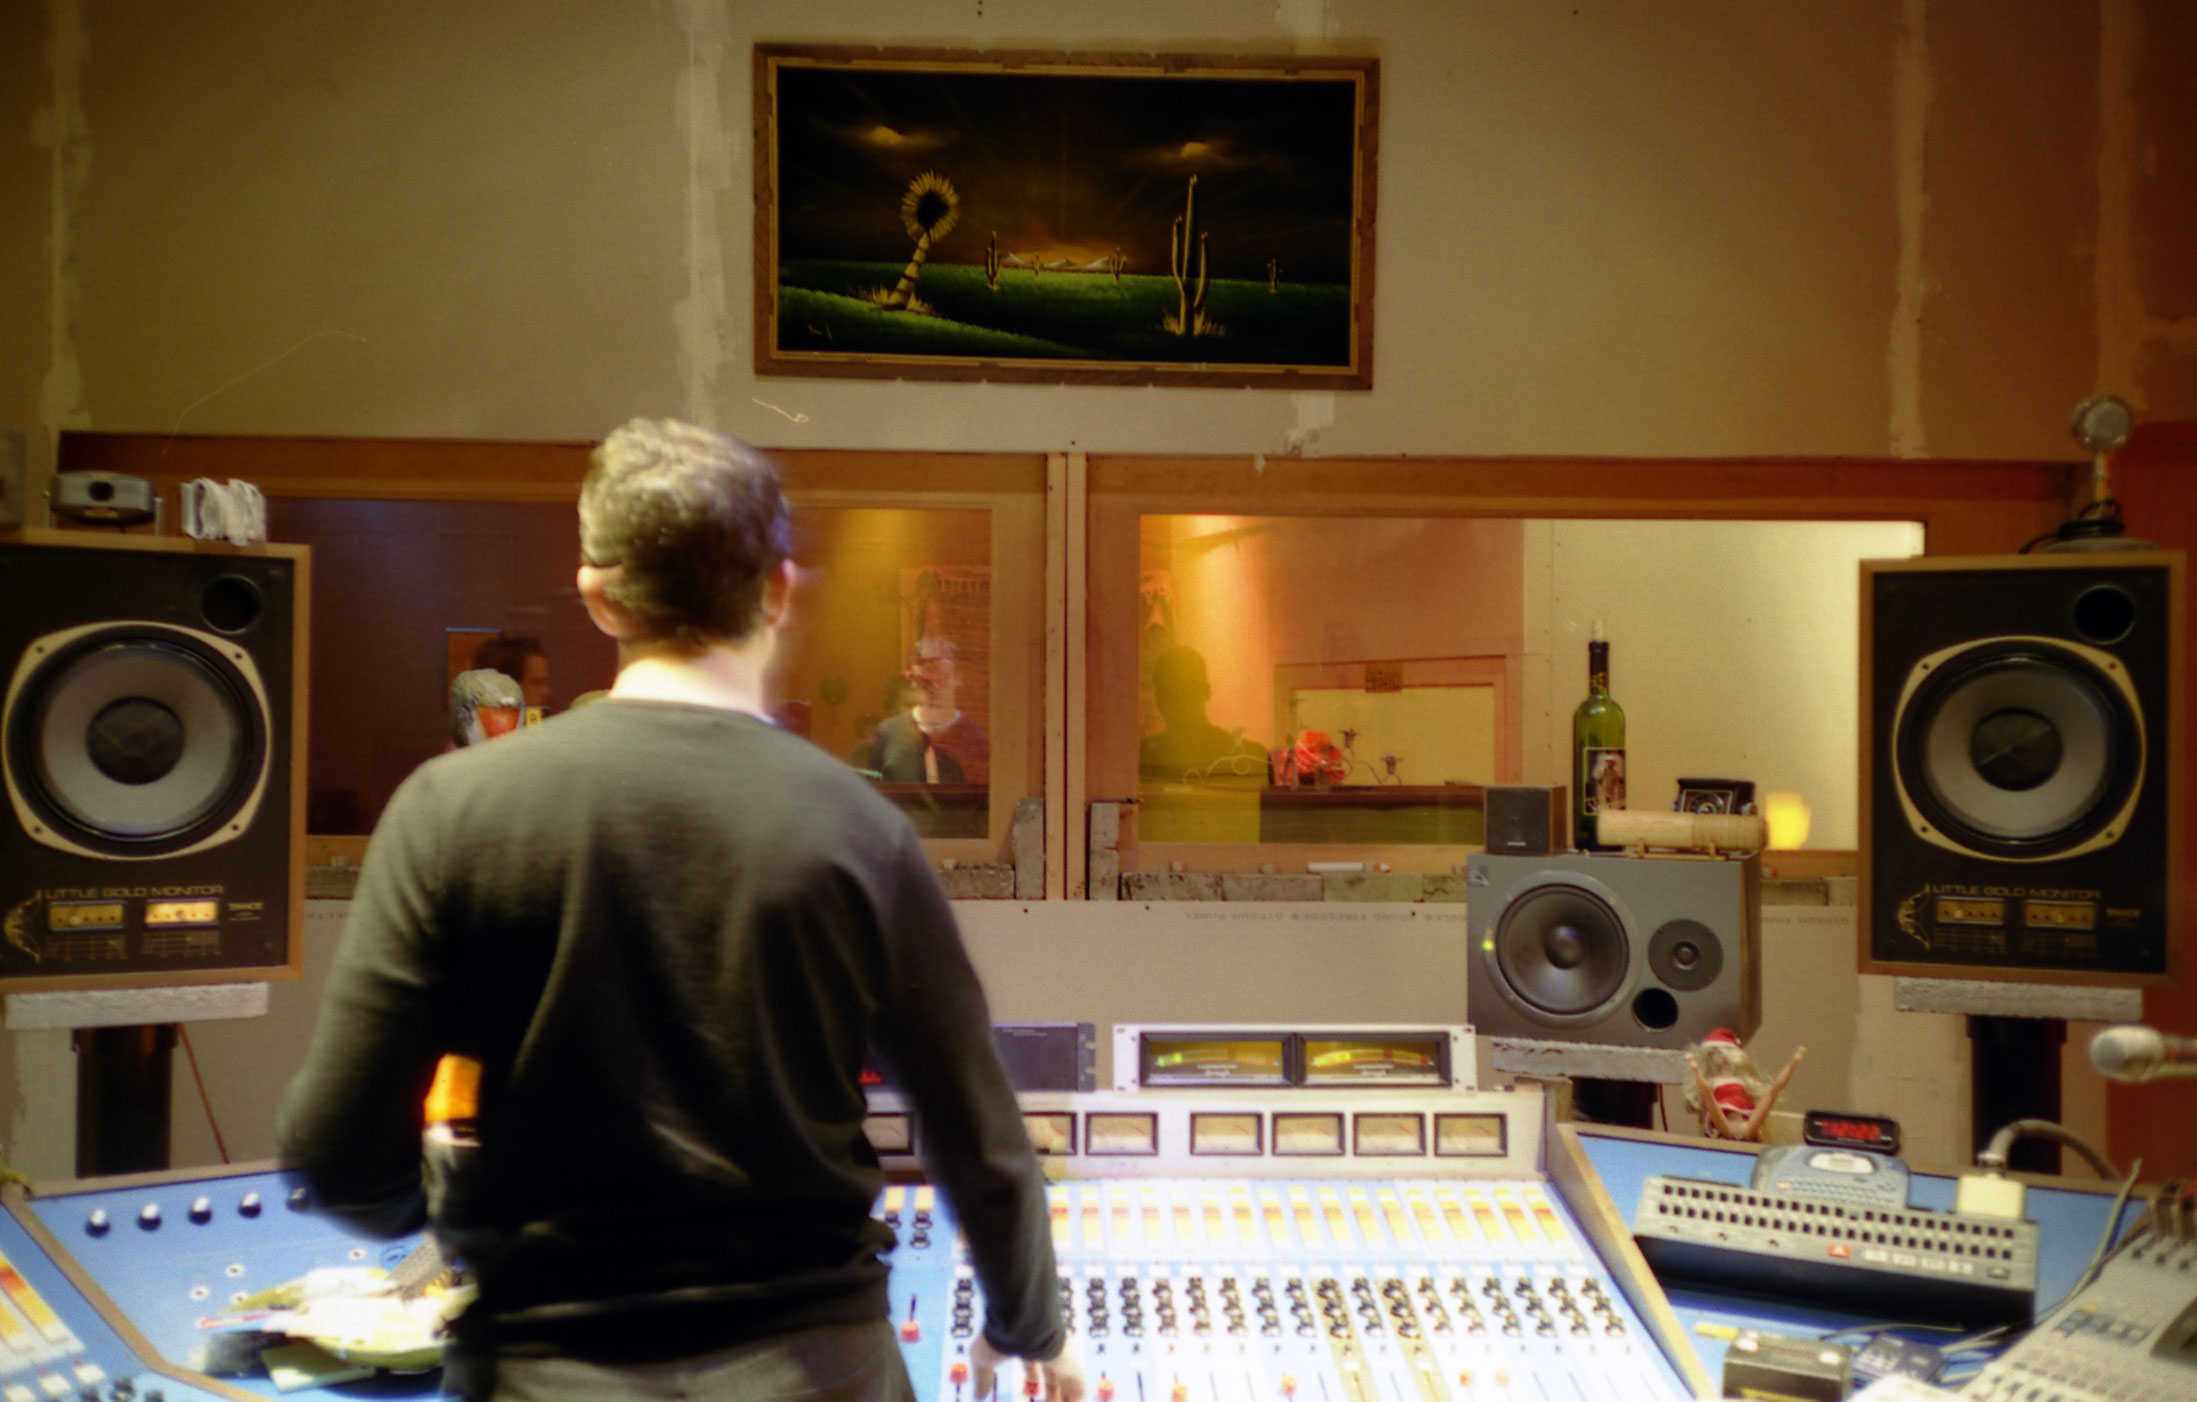 Console De Mixage Audio Dans Une Session D'enregistrement